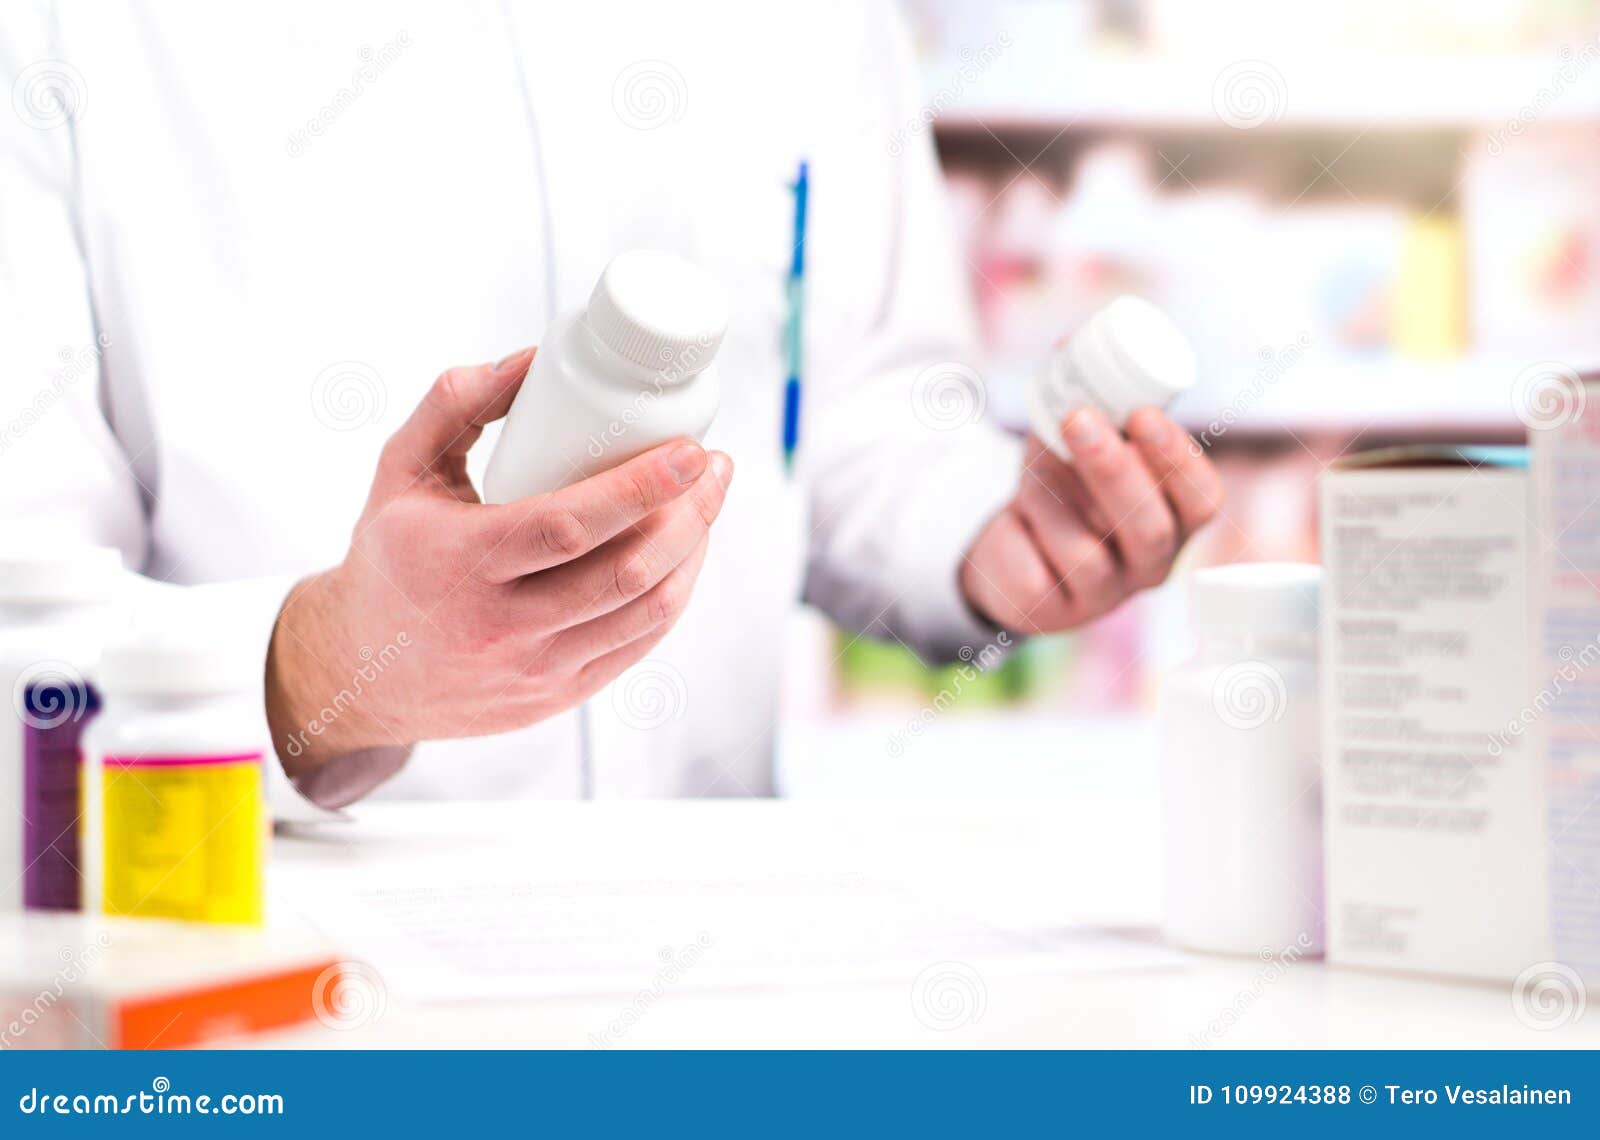 pharmacist in pharmacy. holding two bottles of pills.